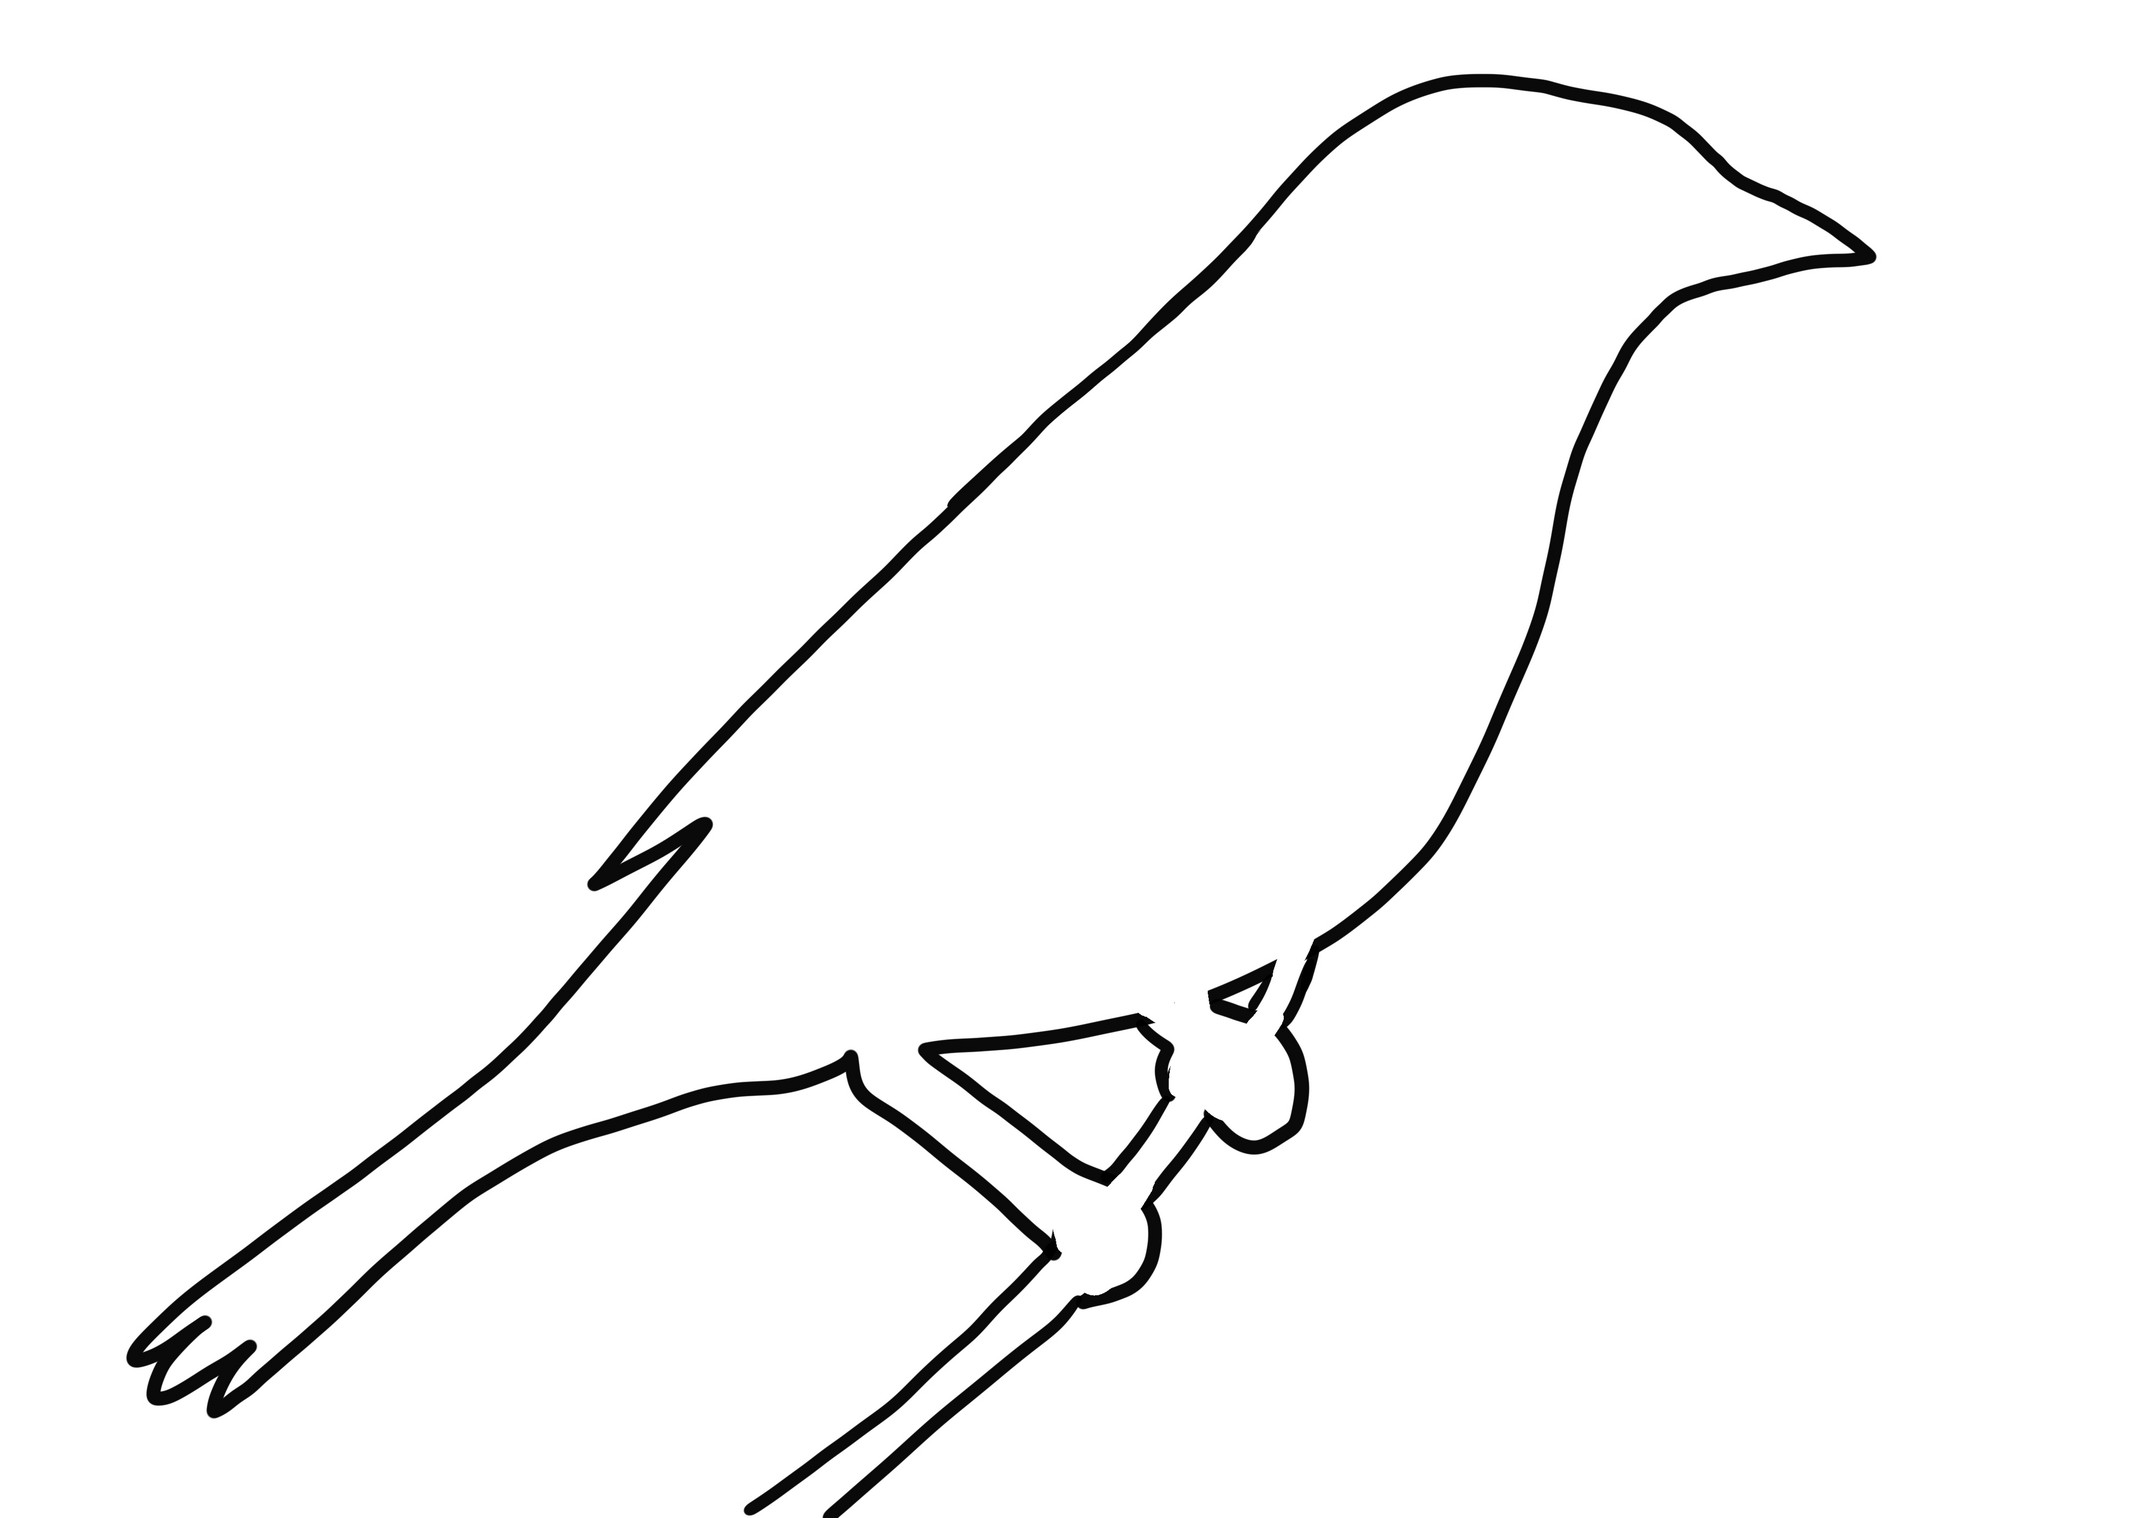 Disegno di uccello sialia realistico da colorare